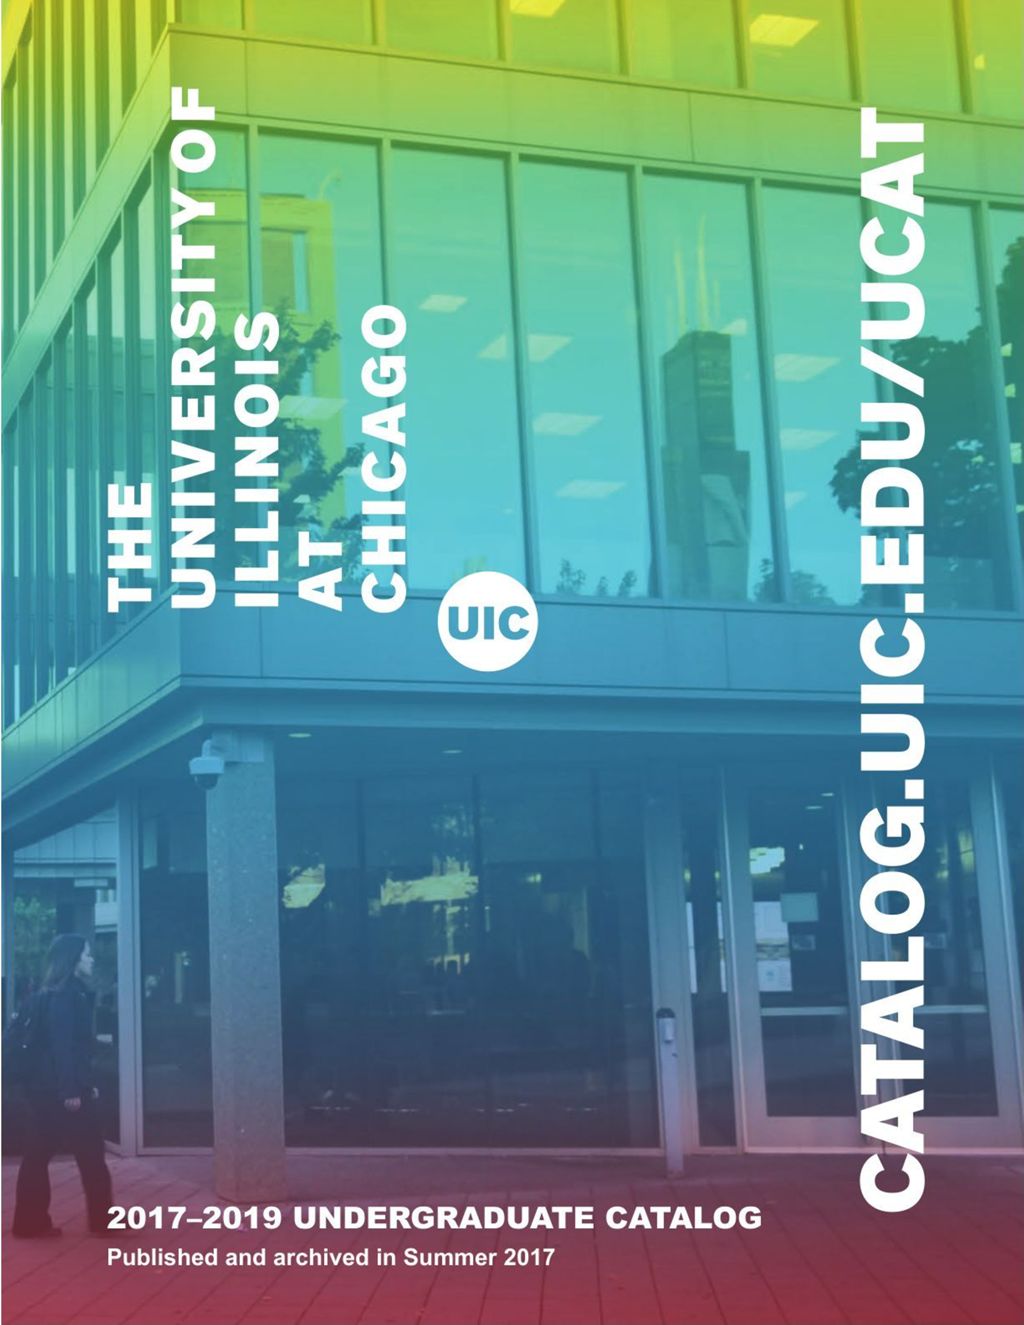 Undergraduate Catalog, 2017-2019